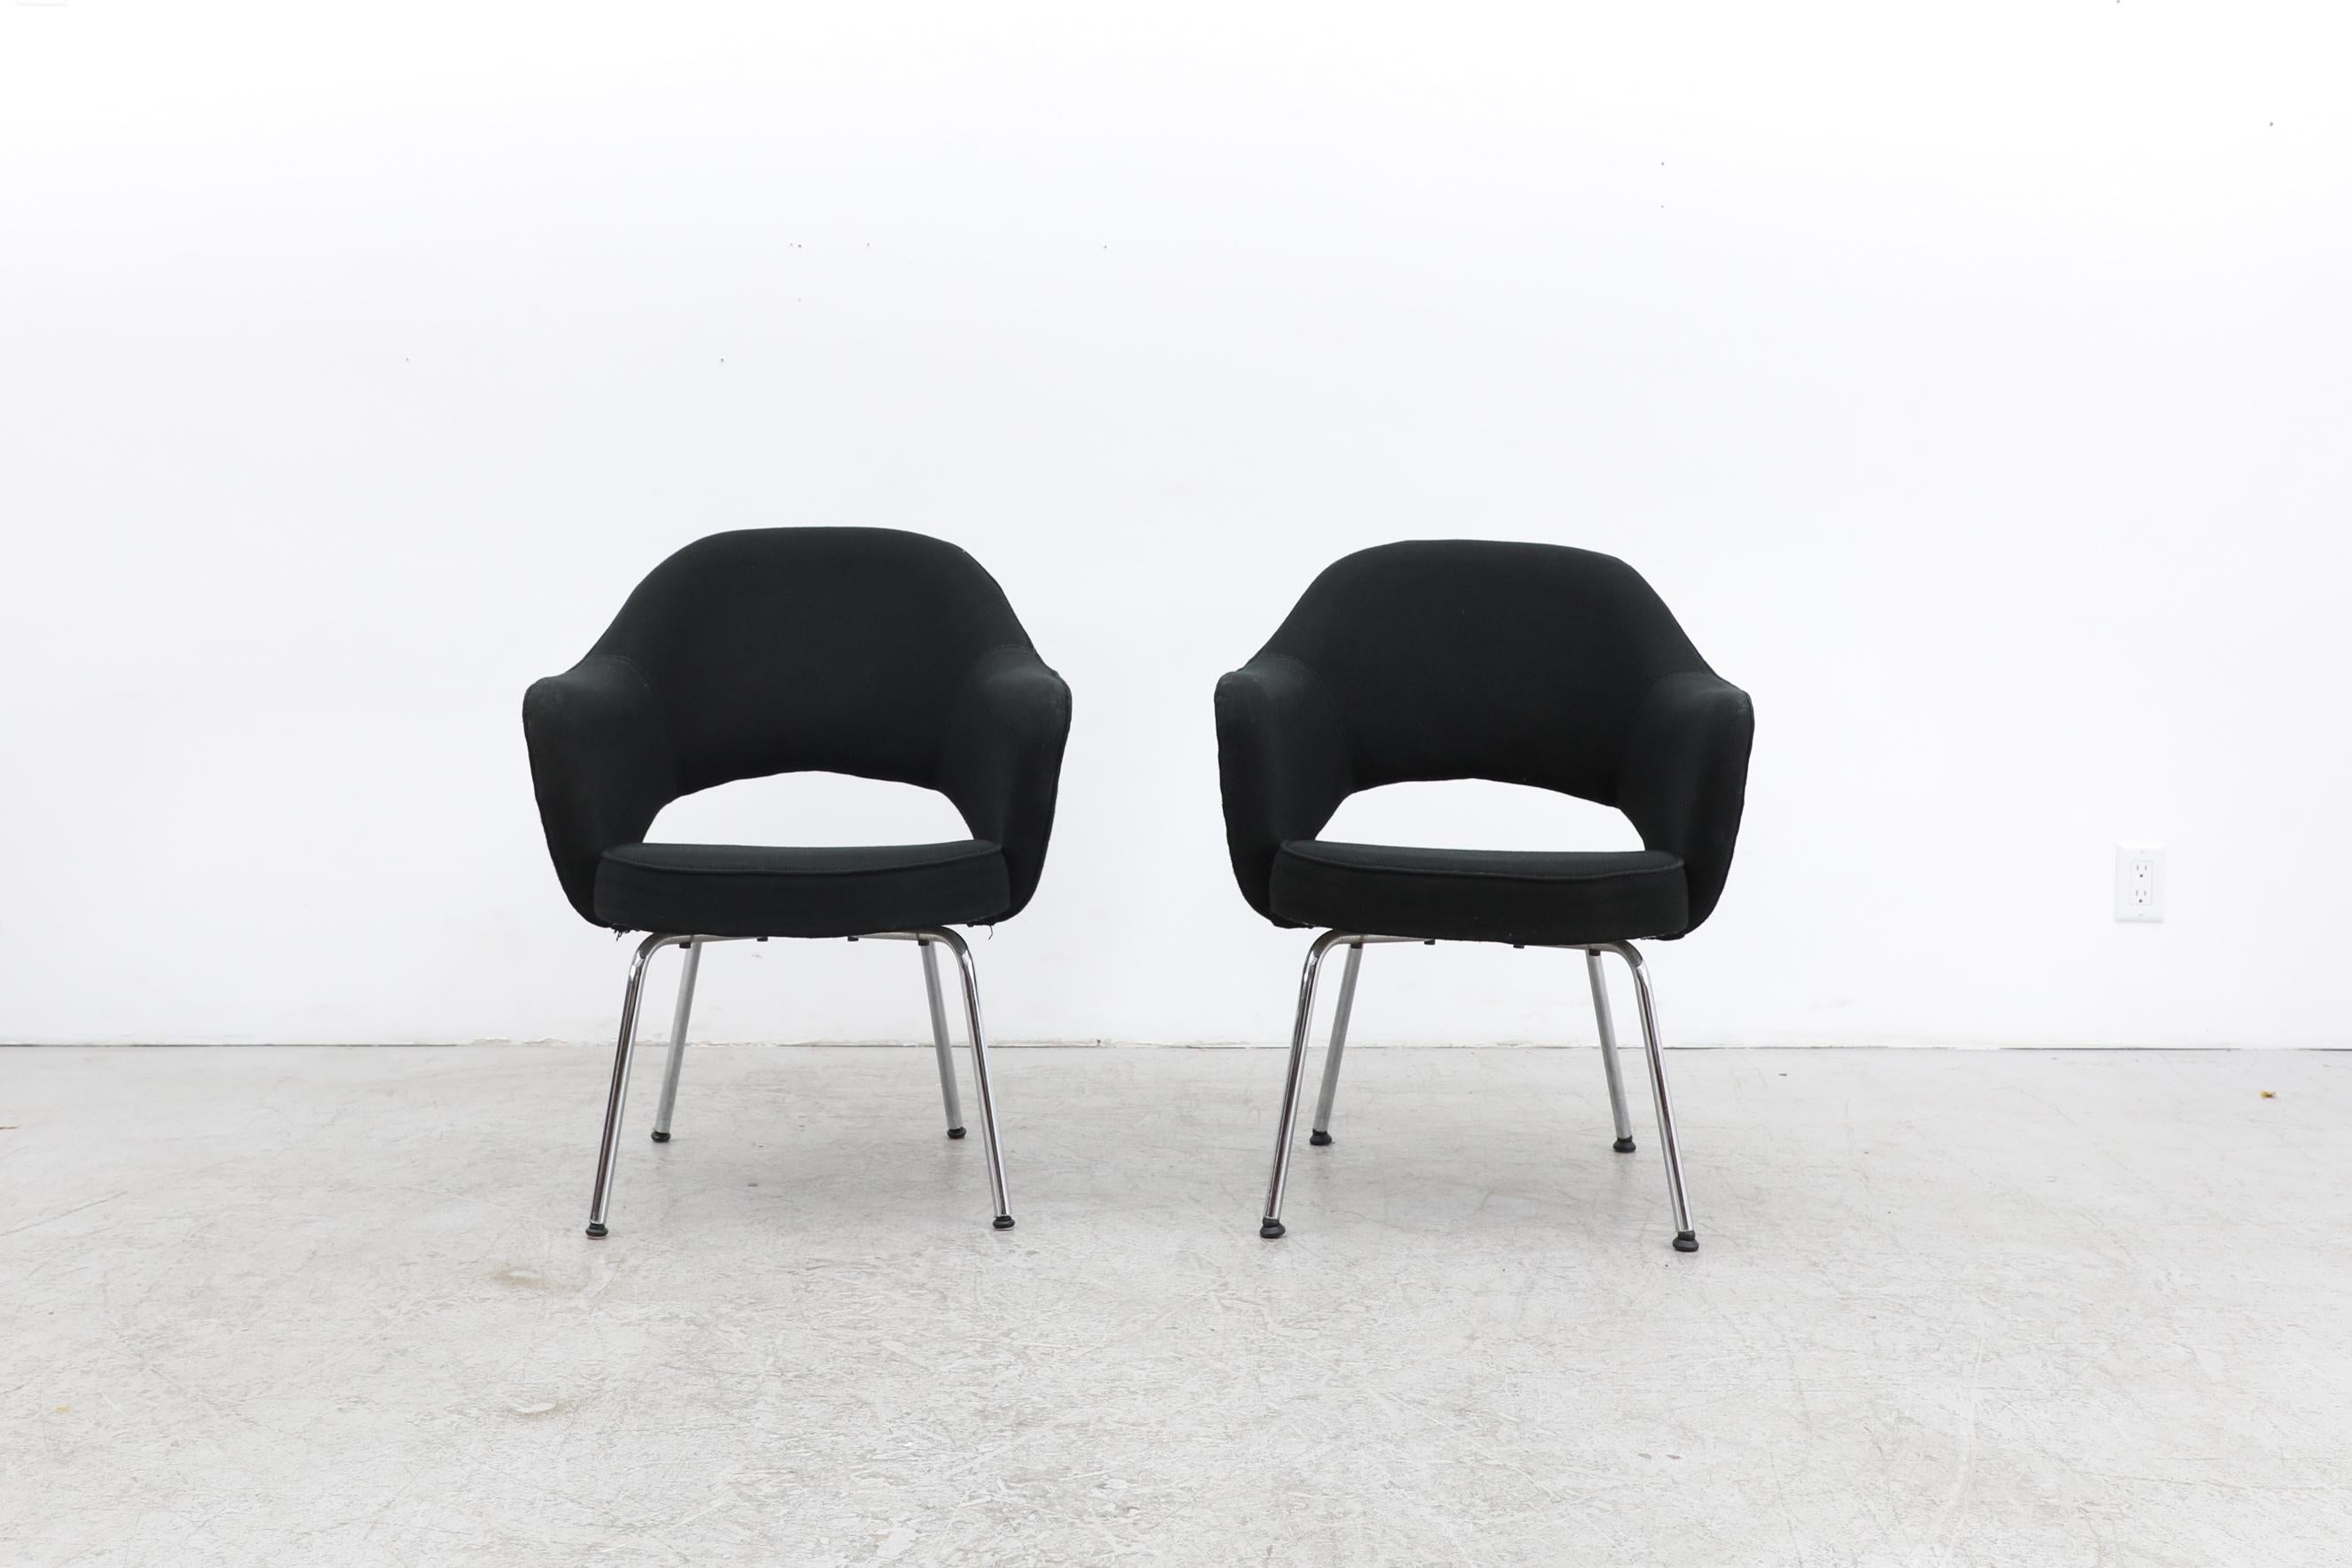 Ein Paar schwarz gepolsterte Saarinen Executive Sessel mit Chrombeinen. Polsterung im Originalzustand mit sichtbaren Abnutzungserscheinungen und Ausbleichungen an den Armlehnen. Die verchromten Beine zeigen Patina. Die Abnutzung entspricht ihrem